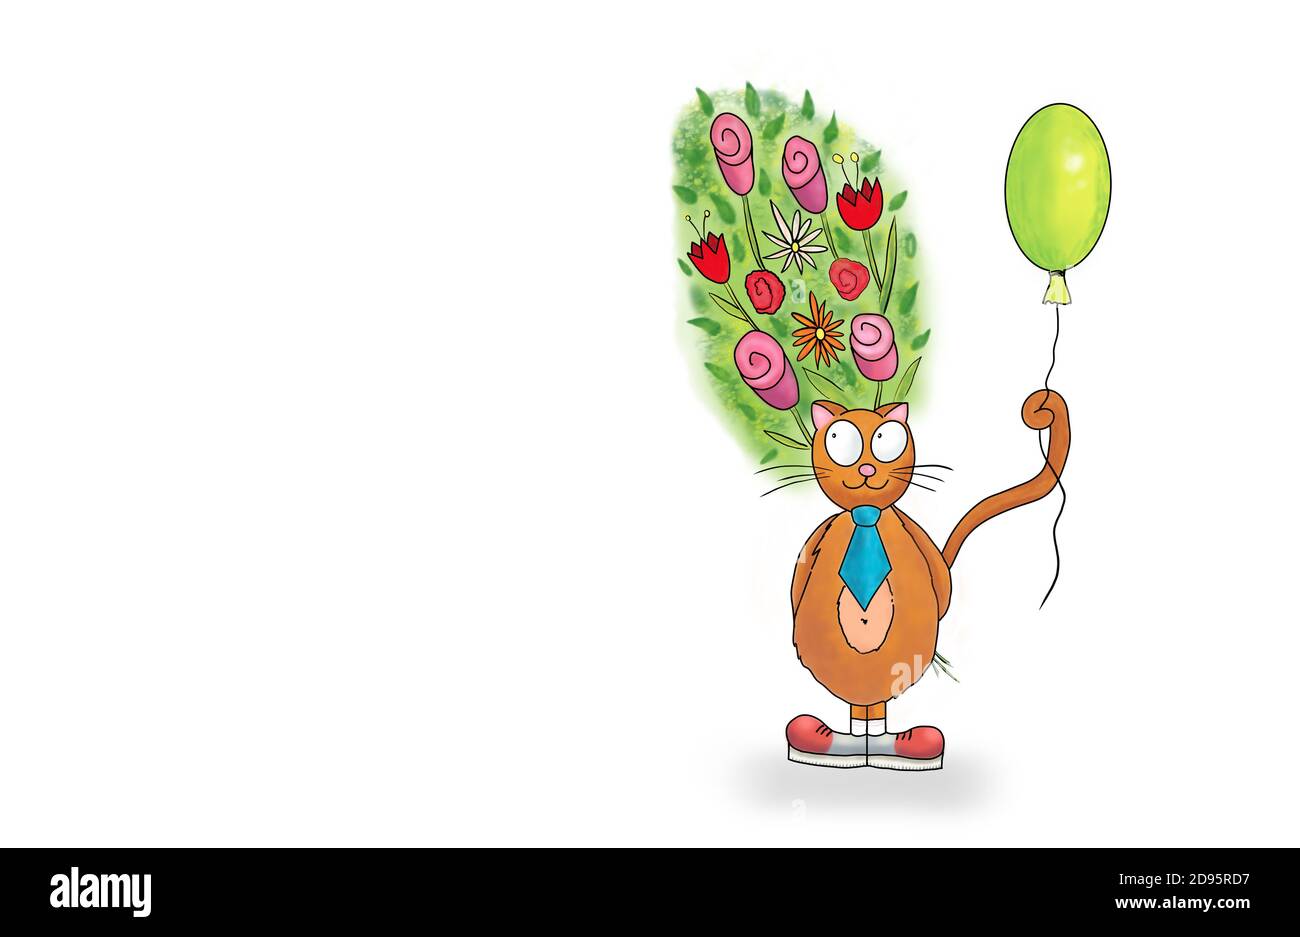 Lindo gato de dibujos animados gracioso sosteniendo un ramo de flores. Ilustración de fondo de tarjeta de felicitación blanca con espacio de copia Foto de stock